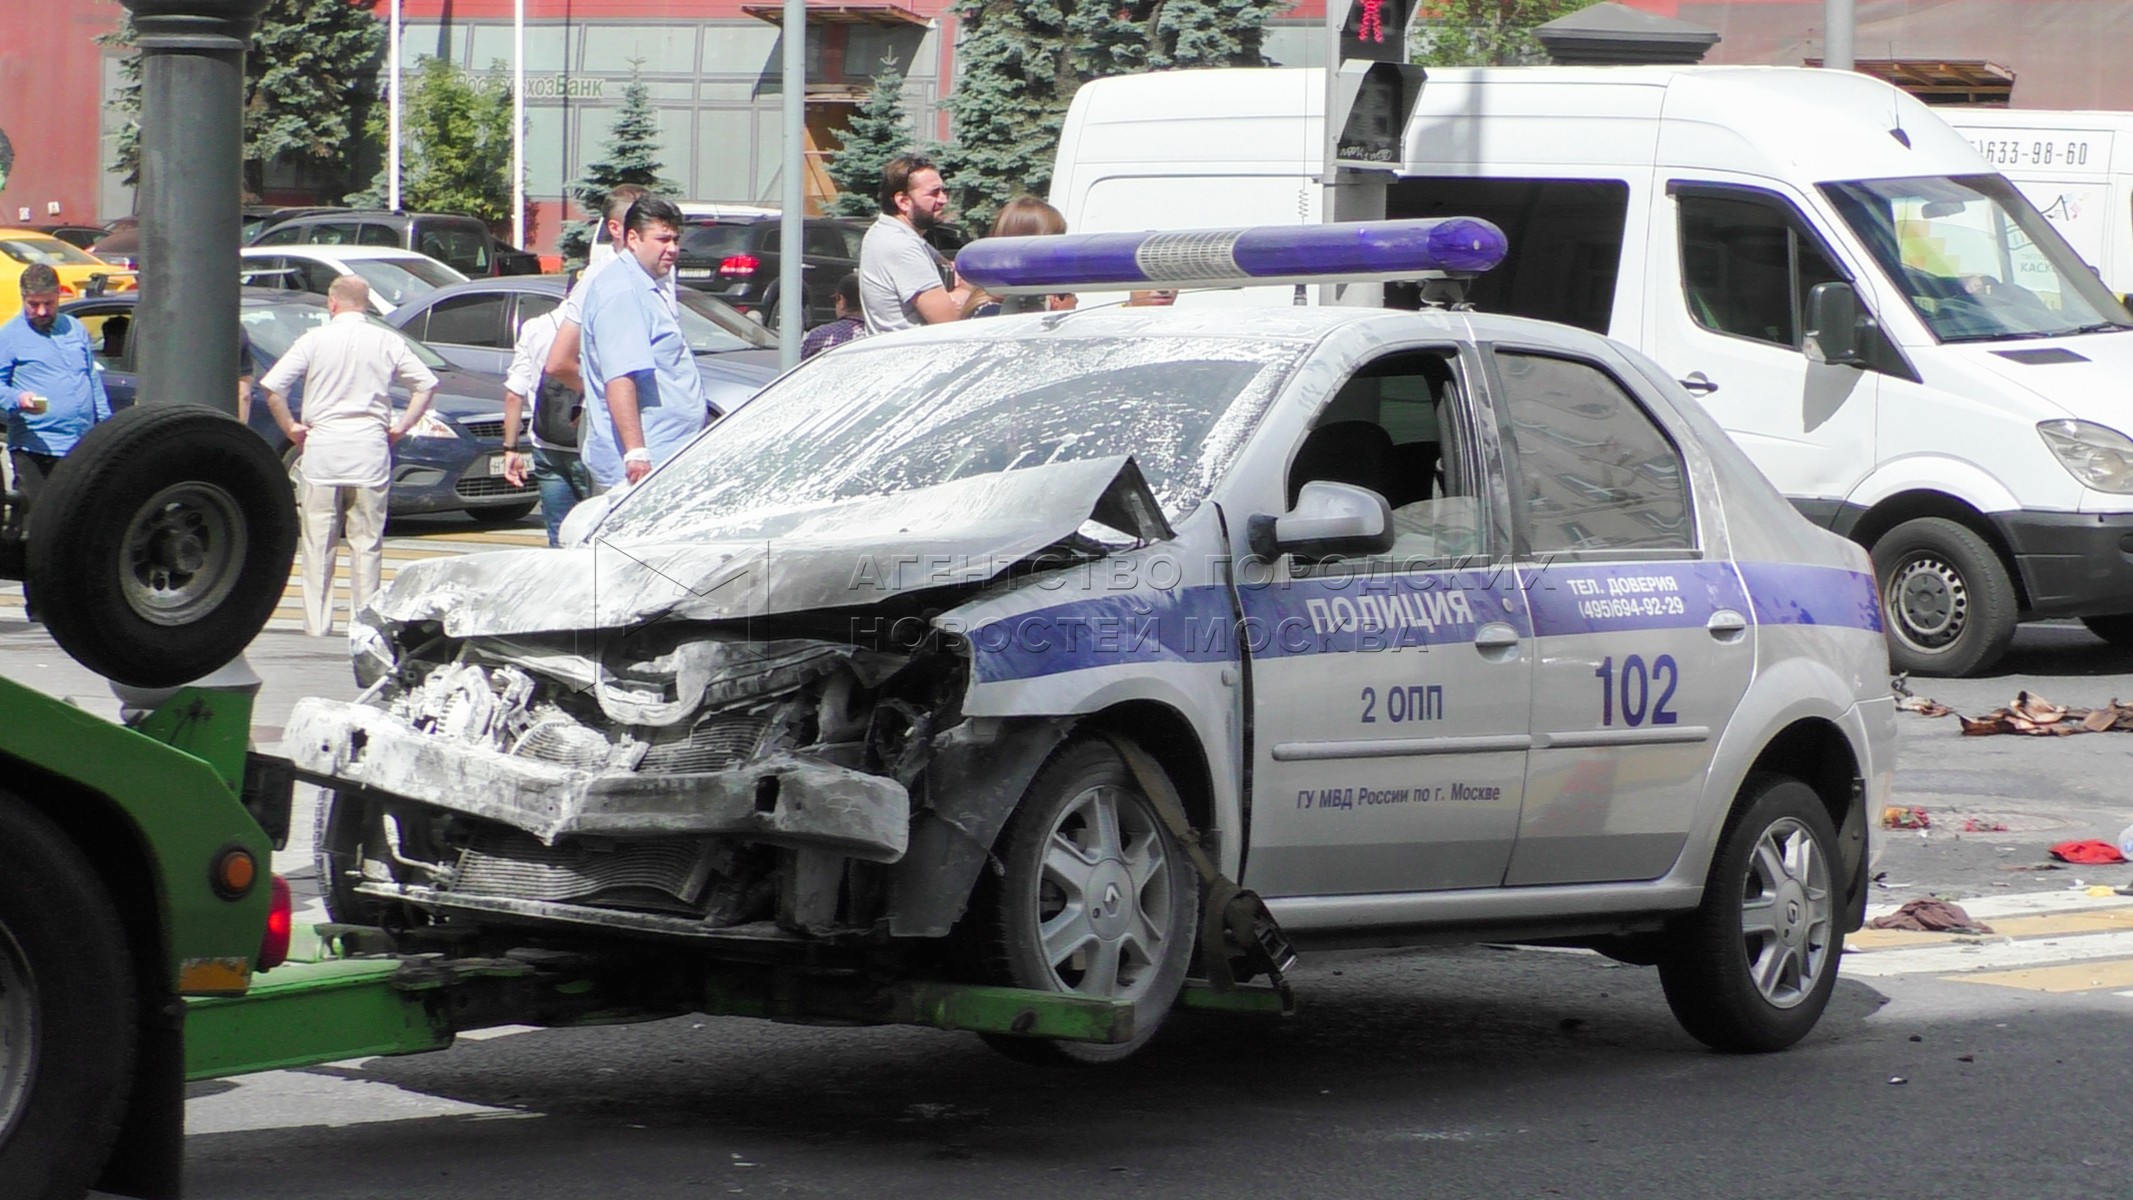 Полицейская машина врезалась. Авария с полицейской машиной. Авария с полицейской машиной в Москве. ДТП автомашина полиции Москва.